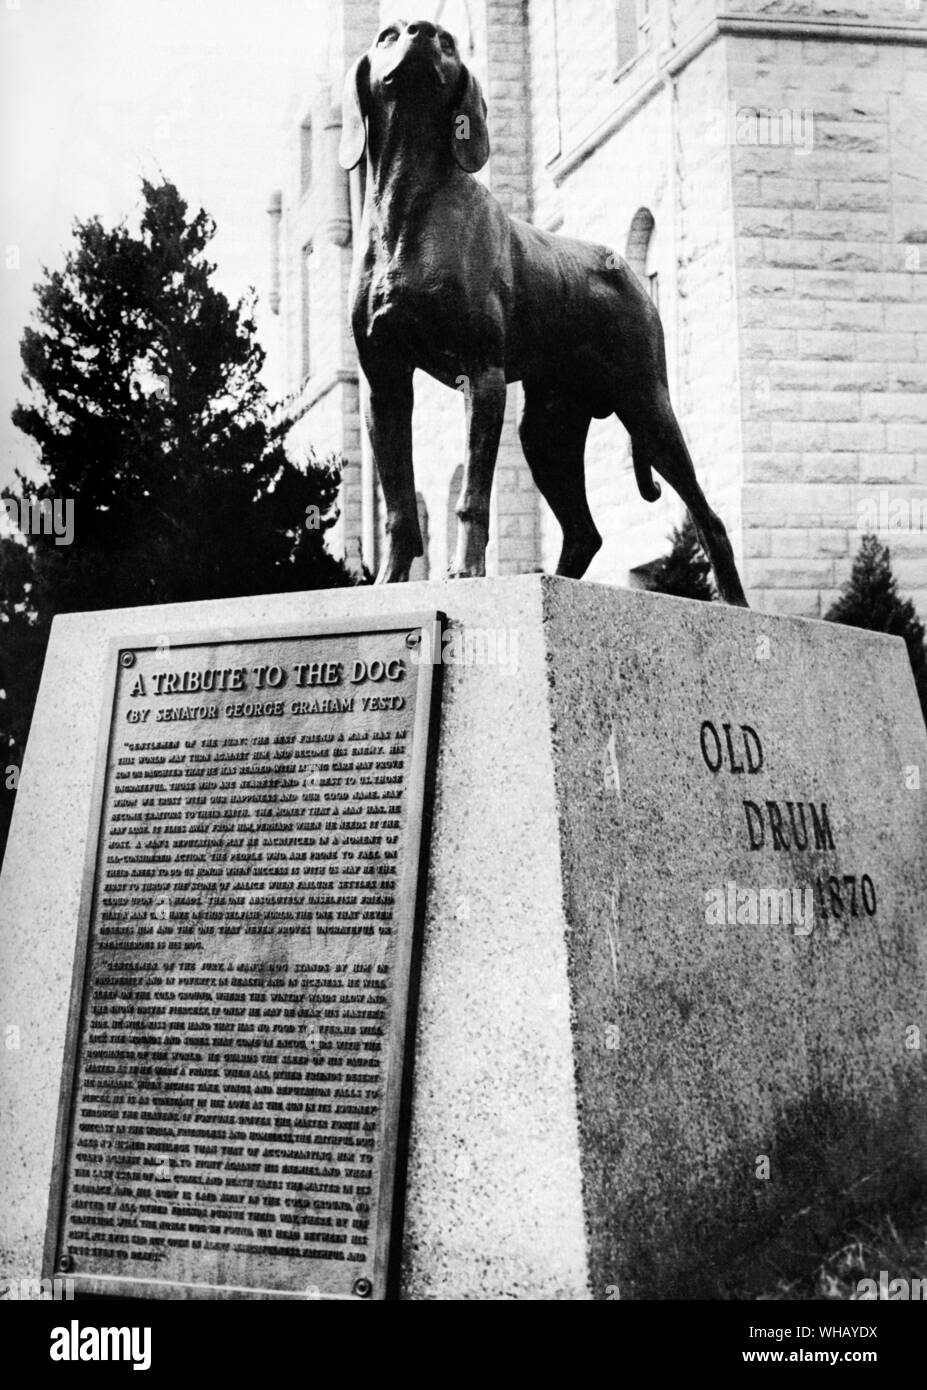 Der berühmte Hund Denkmal in Missouri, USA, errichtet als eine Hommage an alte Trommel von Senator George Weste und von der Treue des Hundes 1870 inspiriert Stockfoto